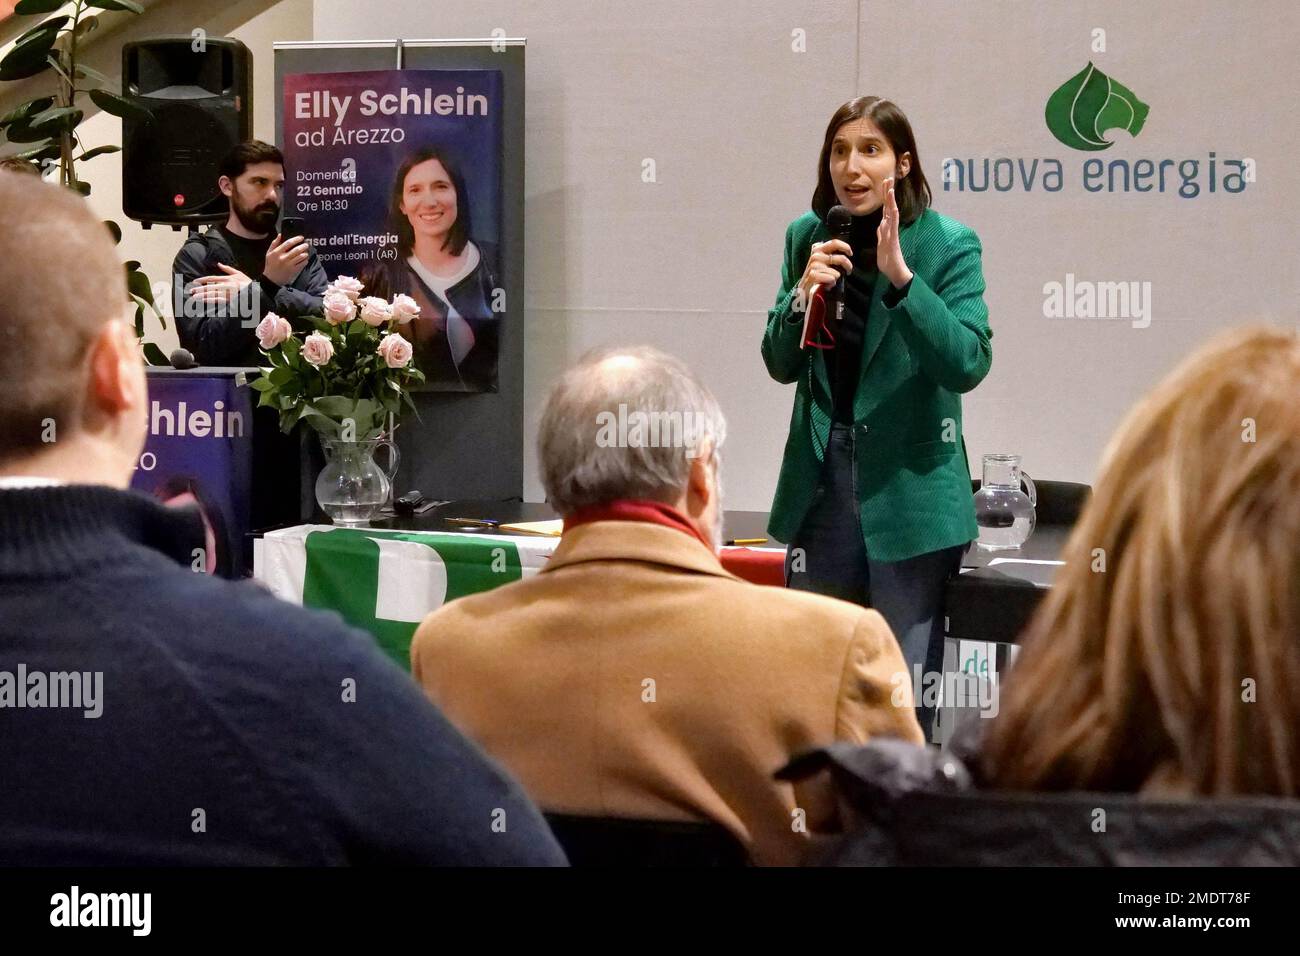 Italia, Arezzo, 22 de enero de 2023: Elly Schlein presenta su candidatura a la secretaria del Partido Demócrata (Partito Democratico) Foto © Daiano Cristini/Sintesi/Alamy Live News Foto de stock